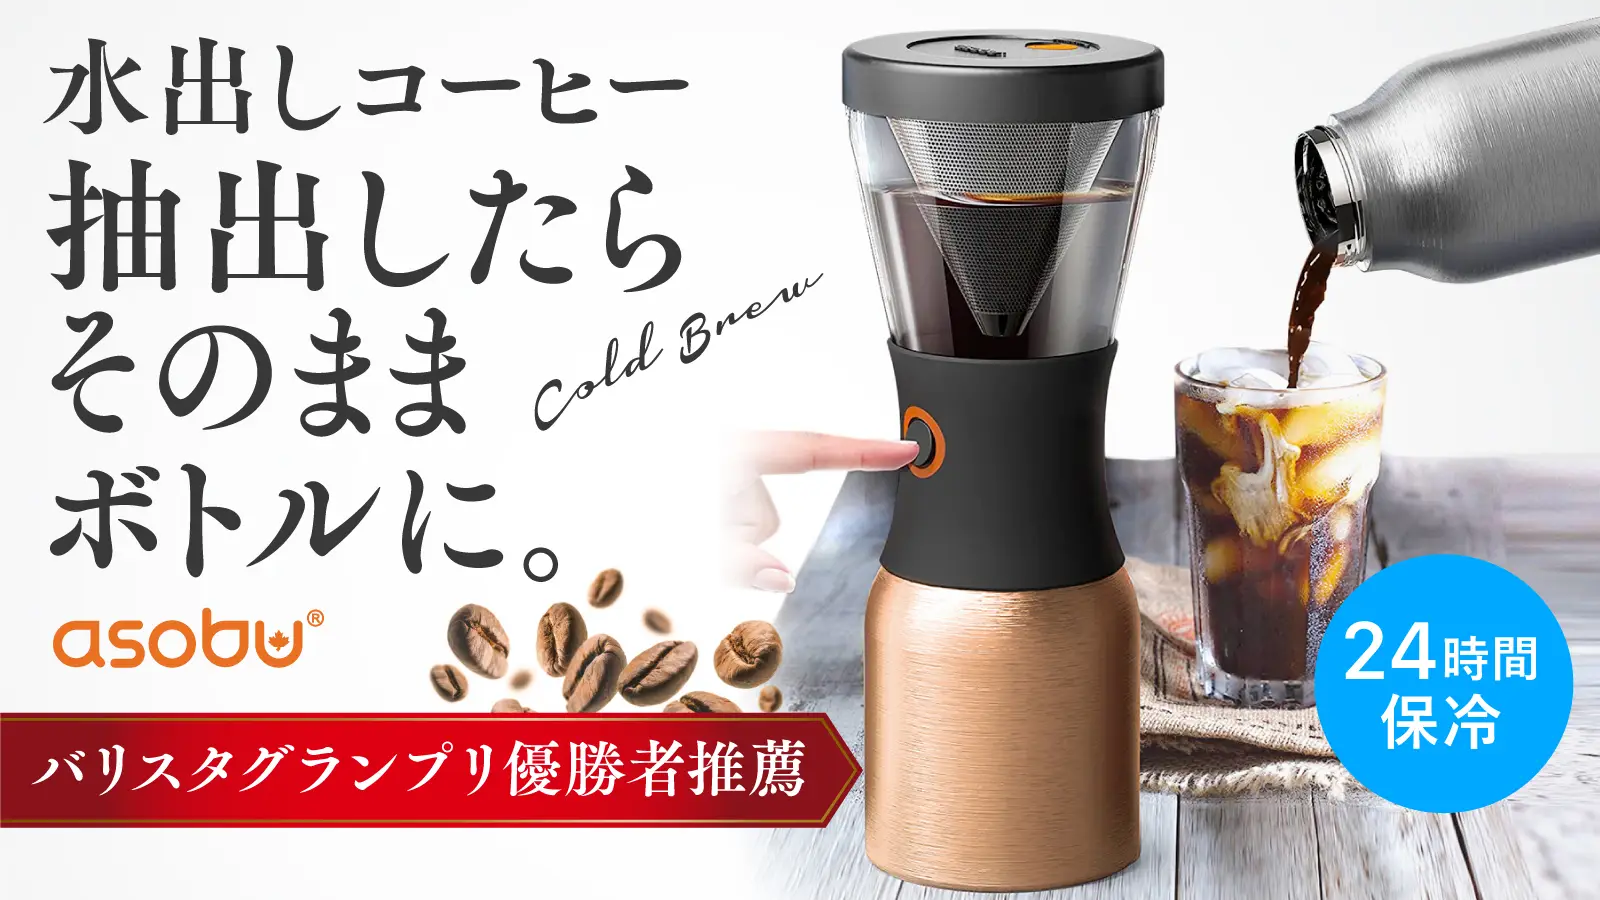 【簡単に本格的な水出しコーヒー】
断熱ボトルにボタンひとつでそのまま入り、
ダブルフィルタ―でまろやか味、取り出し出来る取っ手付属。
GREEN FUNDINGで先行販売開始